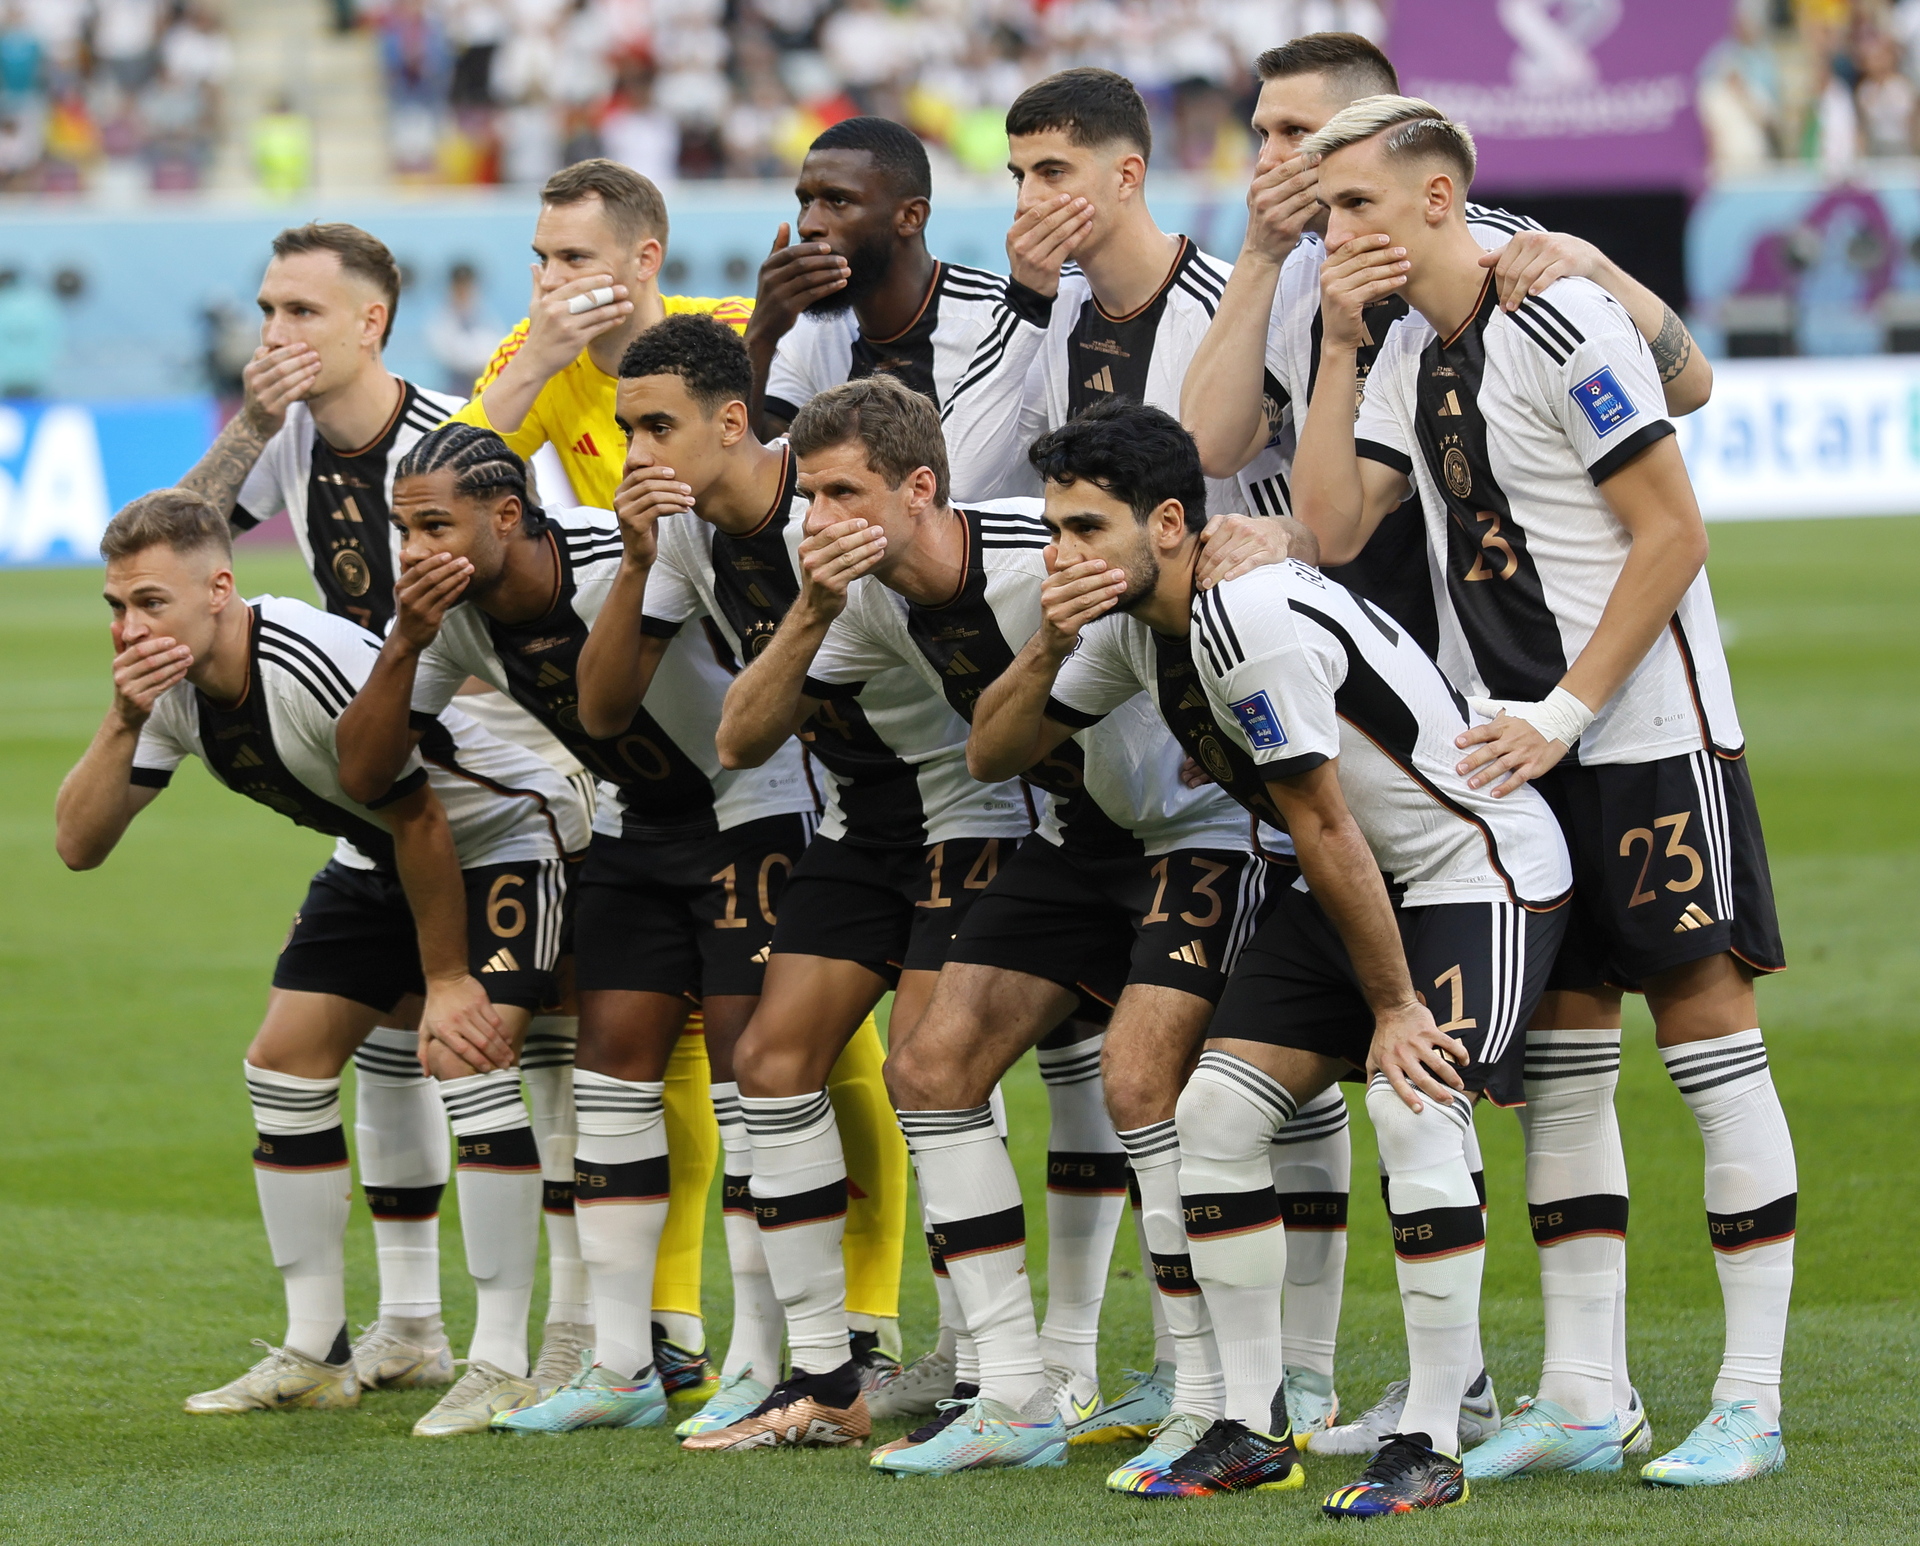 La razón por la que la selección de Alemania se cubrió la boca en su foto antes del partido